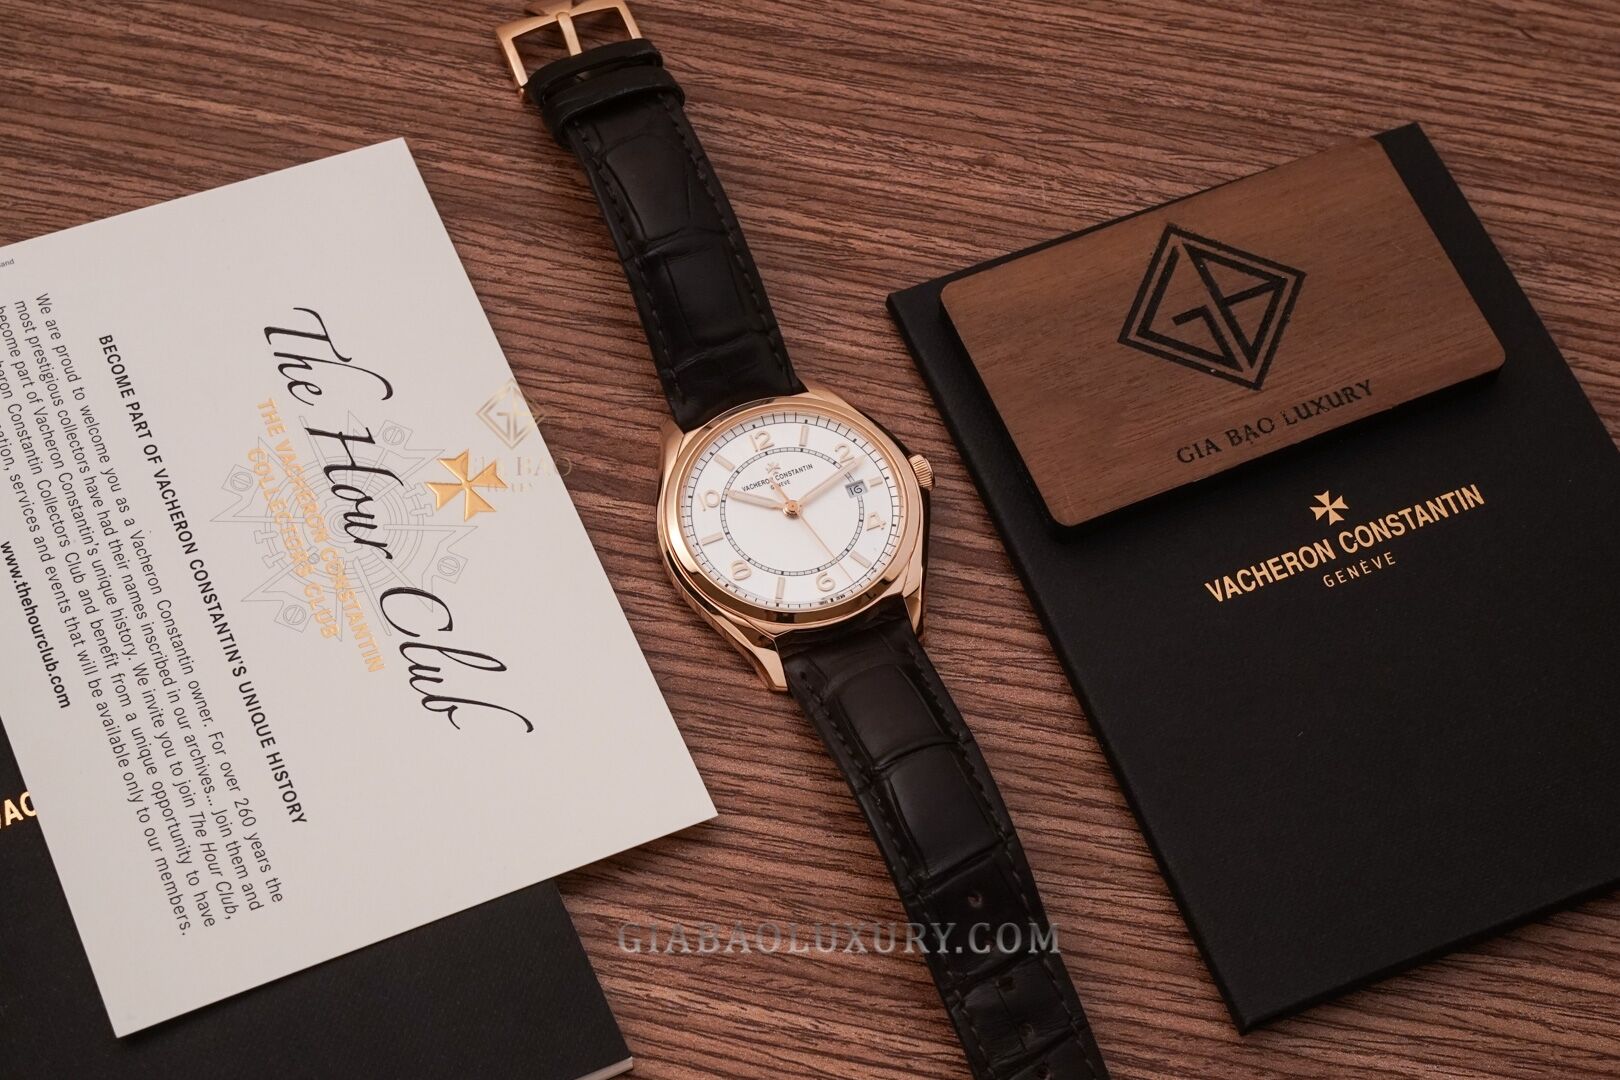 Review đồng hồ Vacheron Constantin Fiftysix 4600E vàng hồng